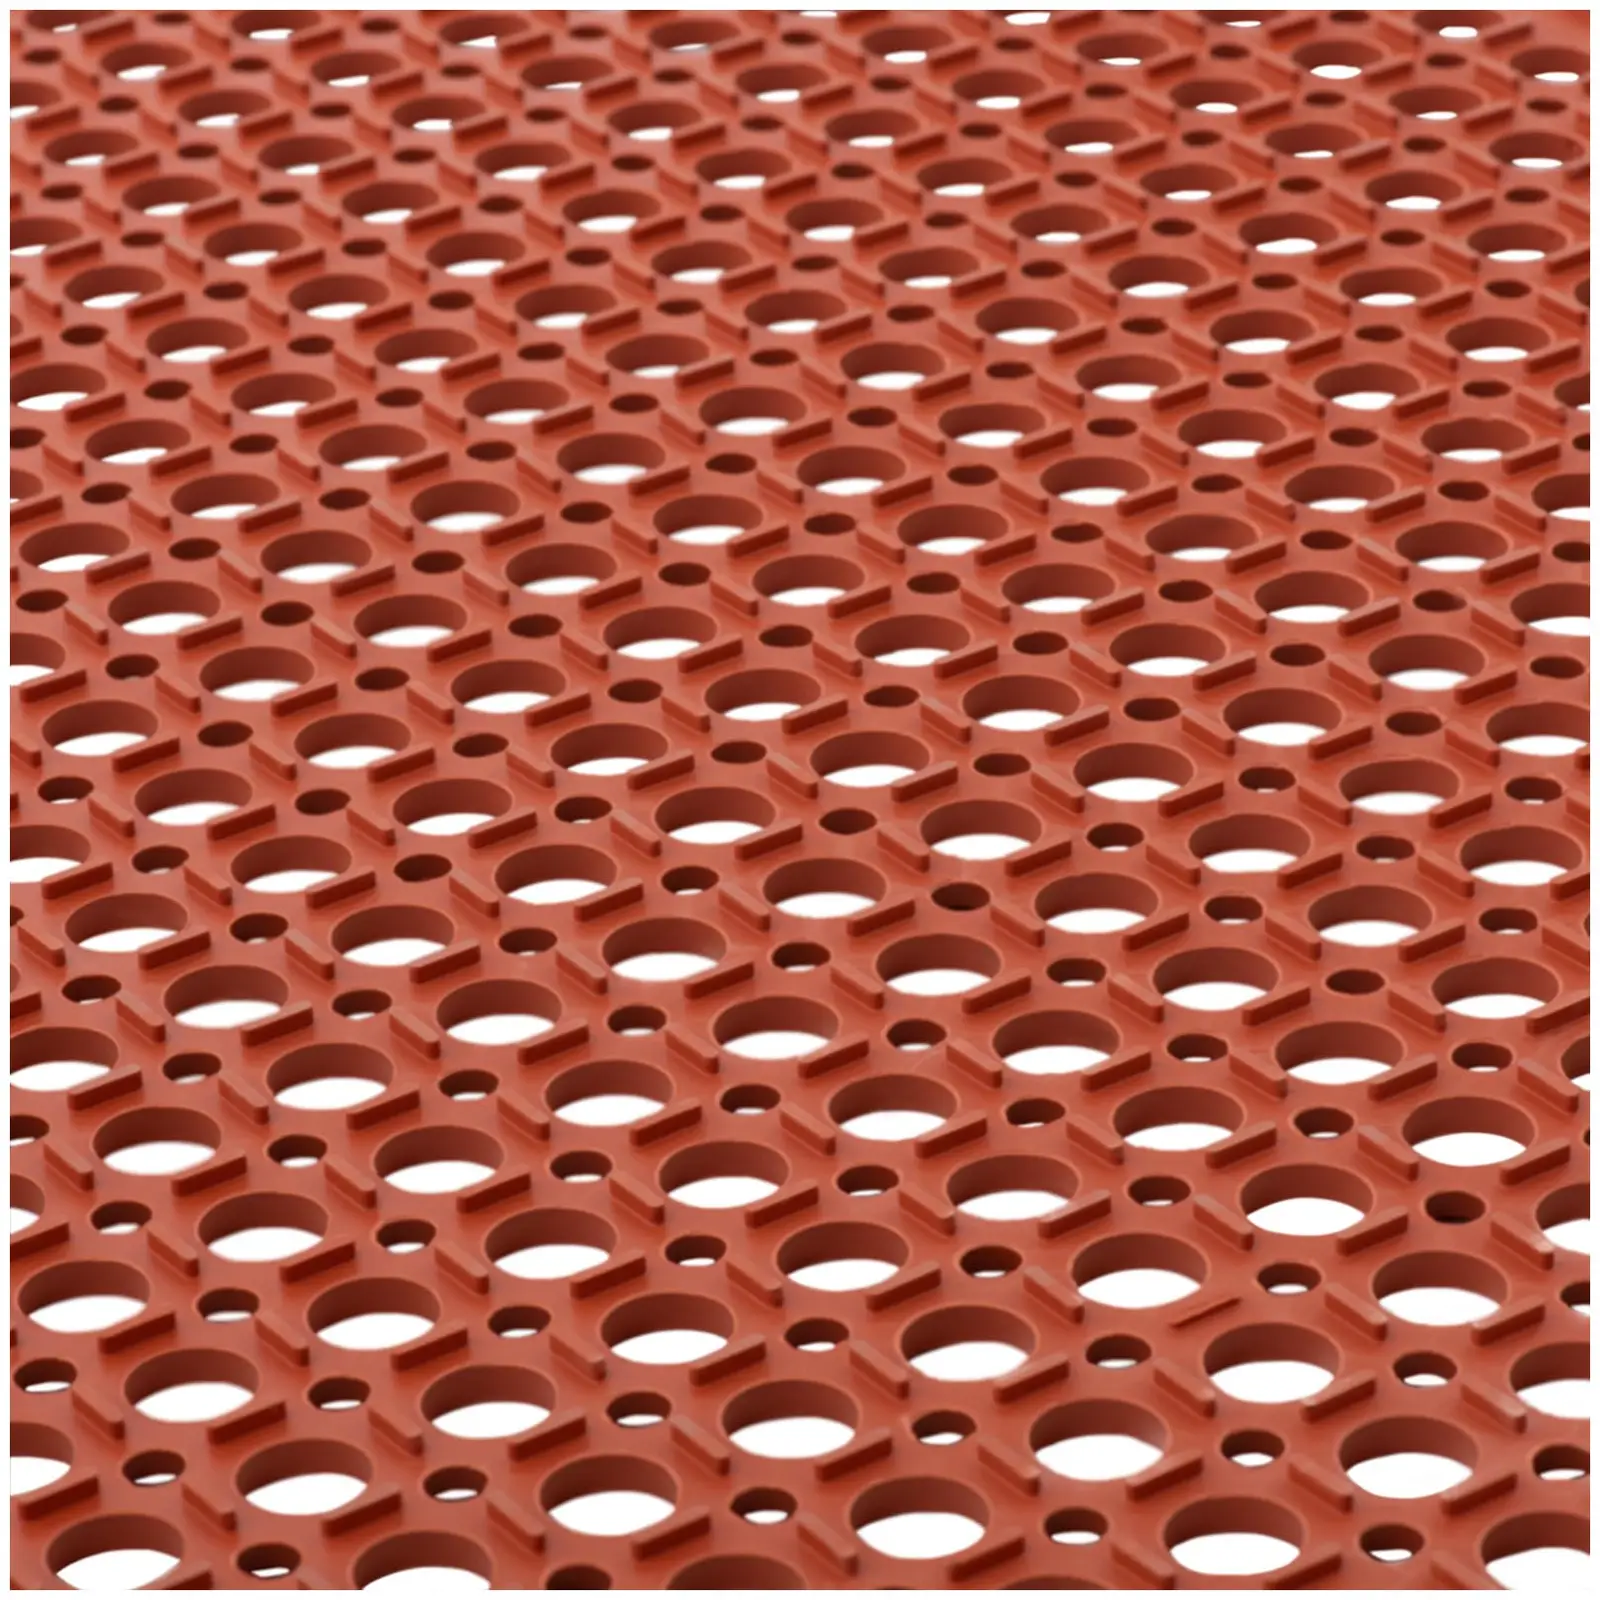 Tappeto in gomma 153 x 92 x 1 cm - Rosso